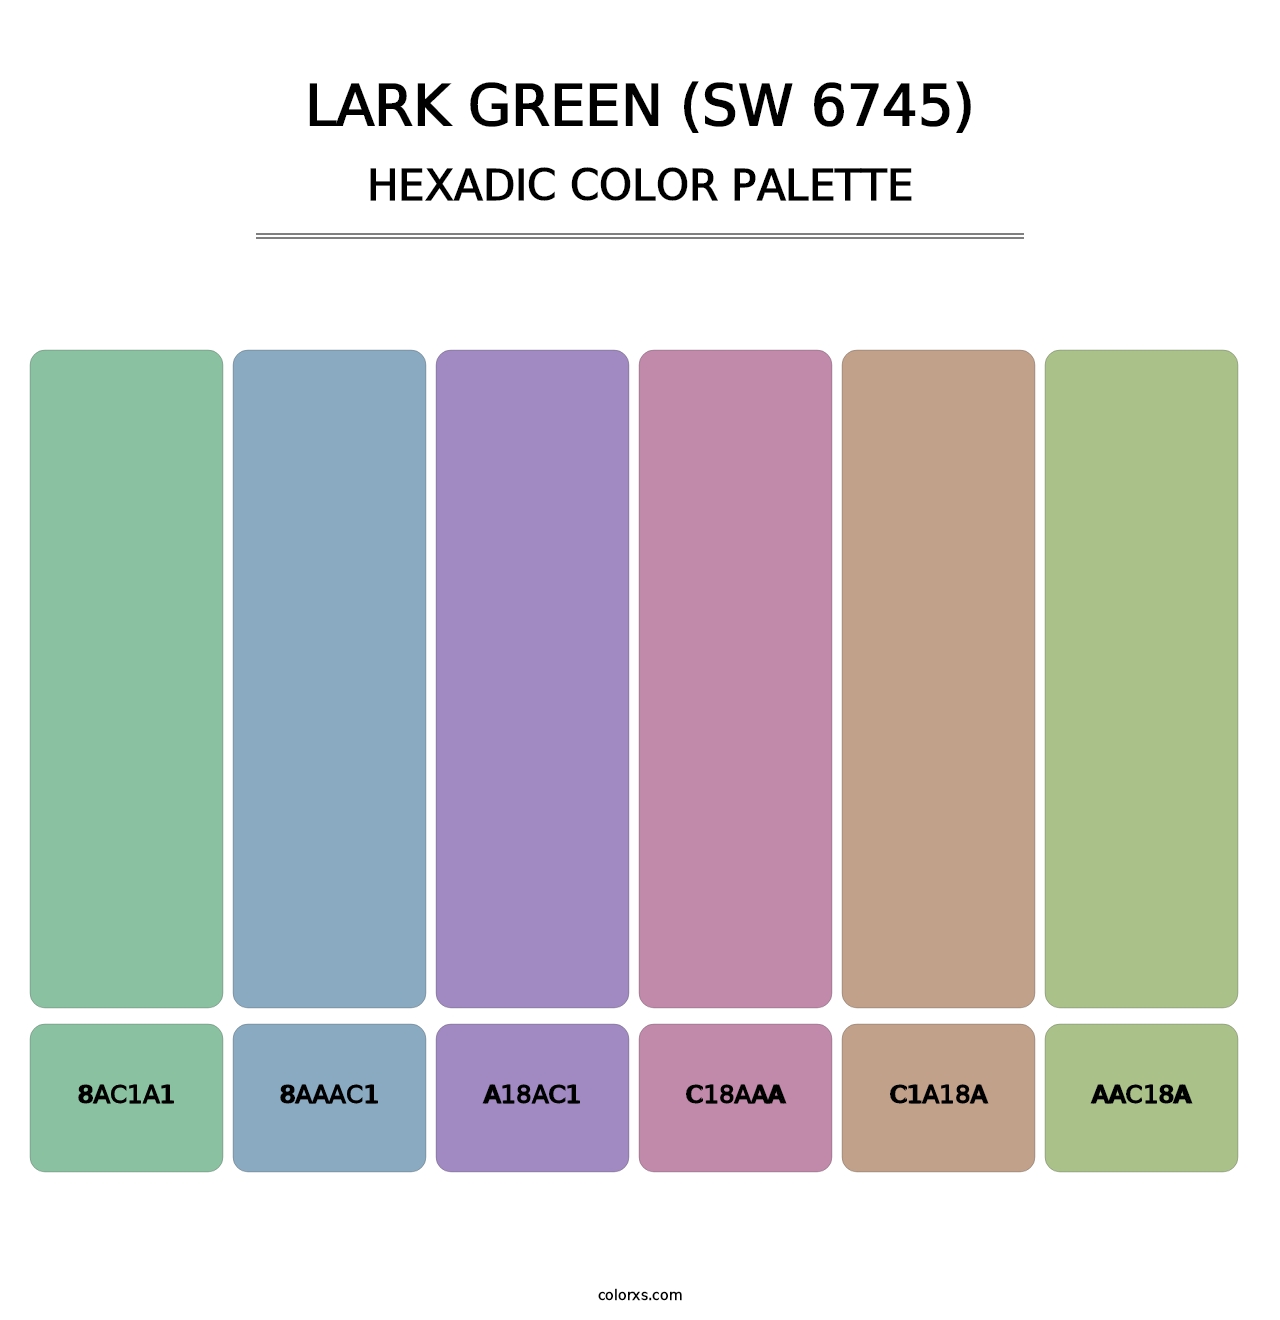 Lark Green (SW 6745) - Hexadic Color Palette